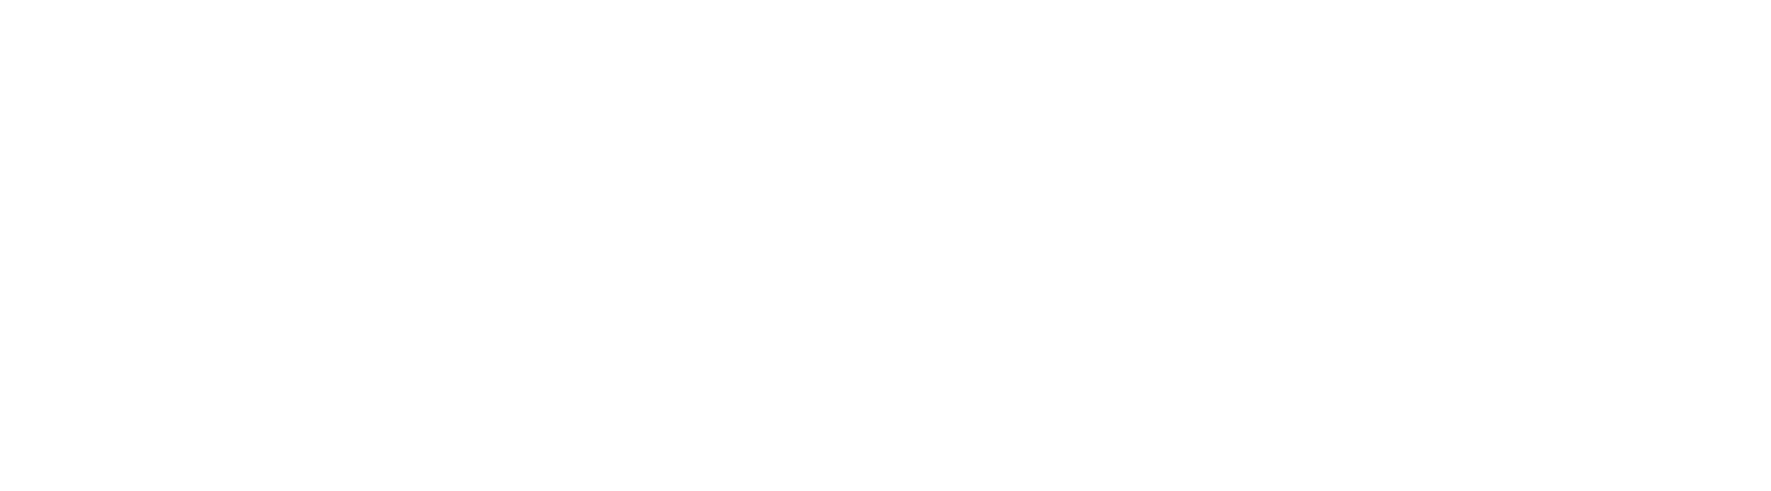 logo-owasp.png